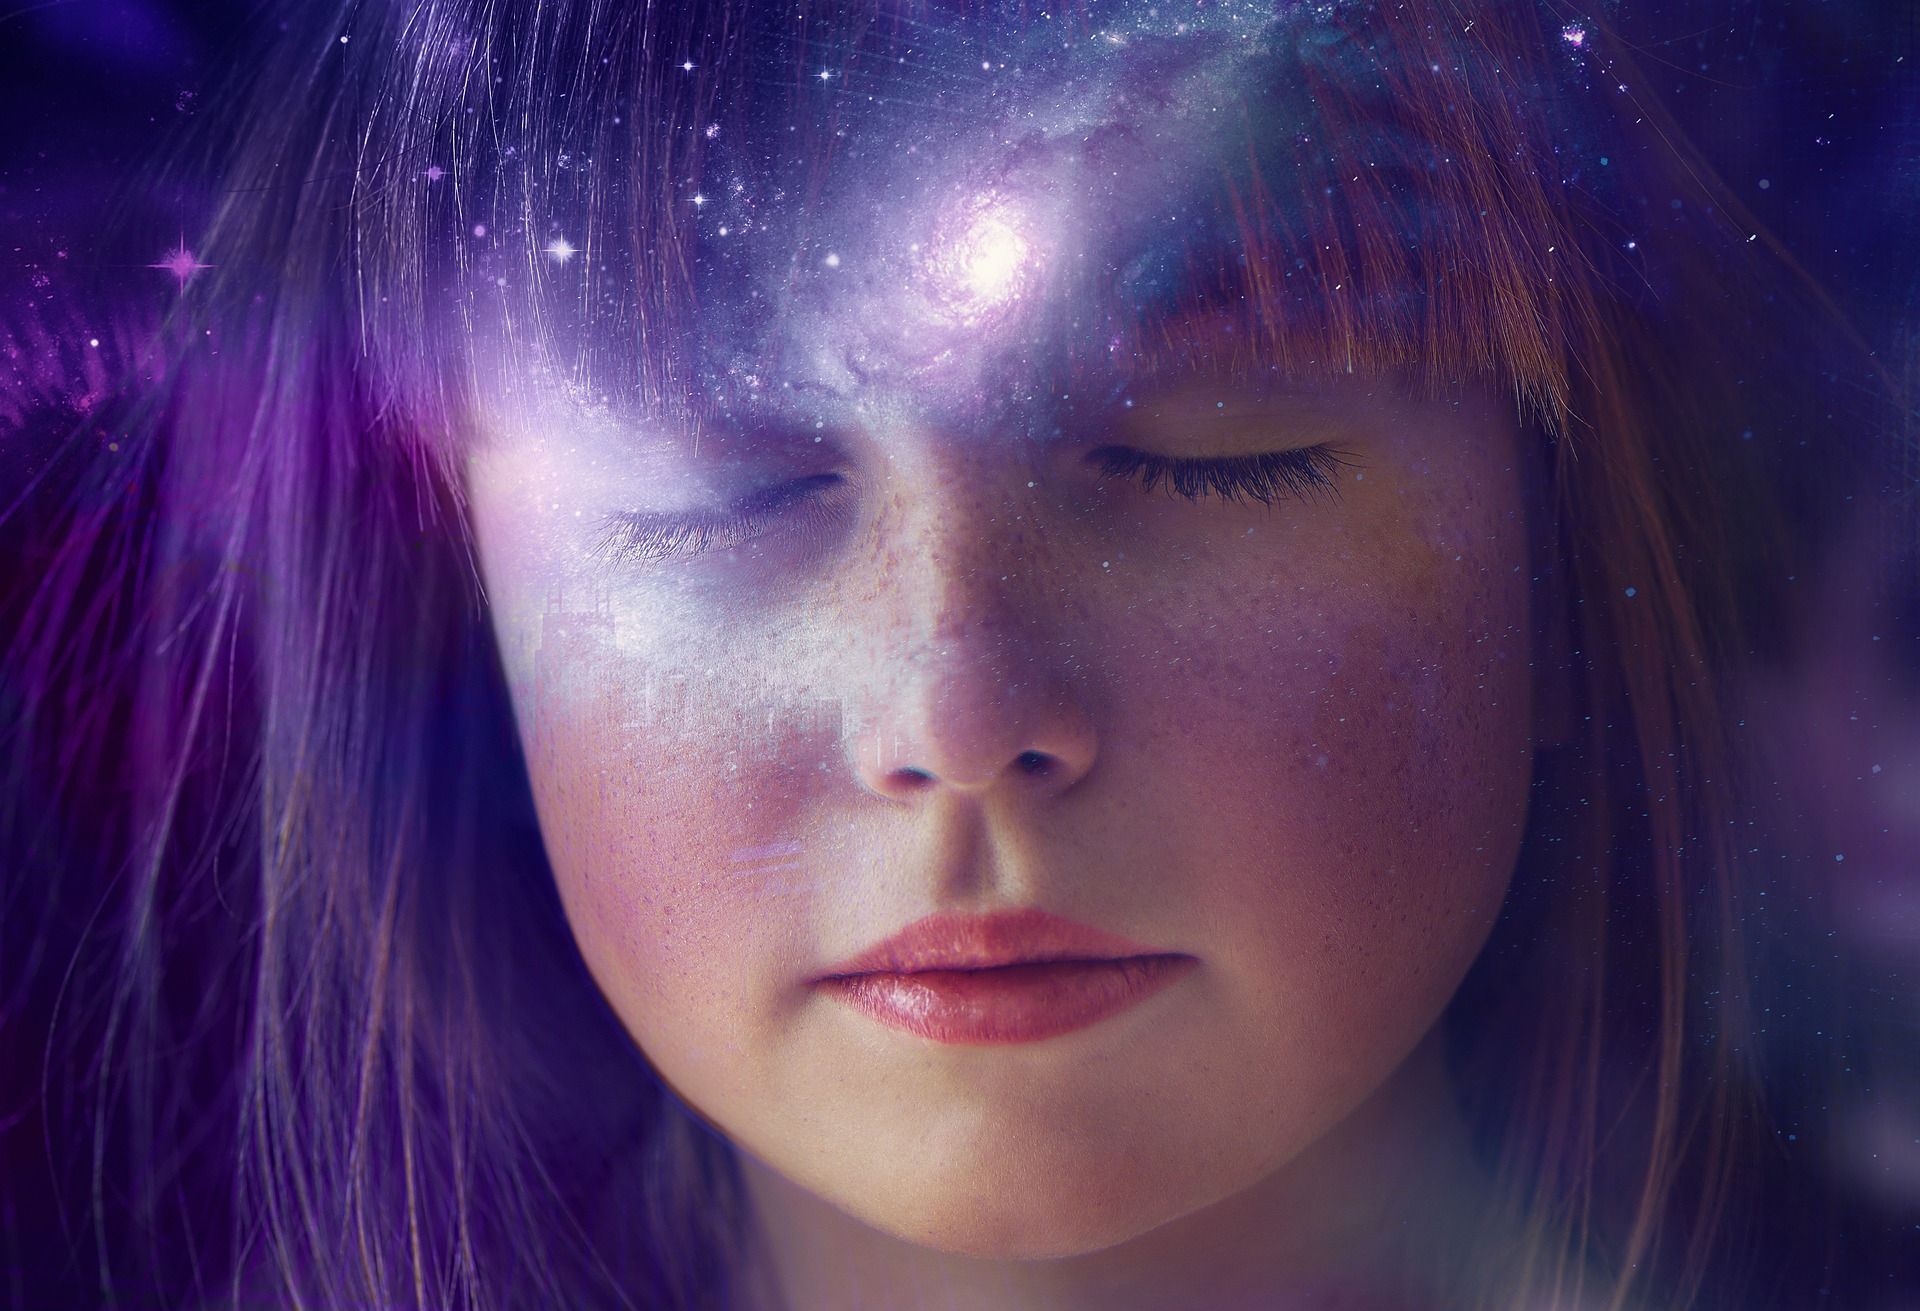 jeune fille les yeux fermés avec des lumières de couleur sur le visage - Image par Leandro De Carvalho de https://pixabay.com/fr/illustrations/fille-univers-fantaisie-galaxie-5801511/